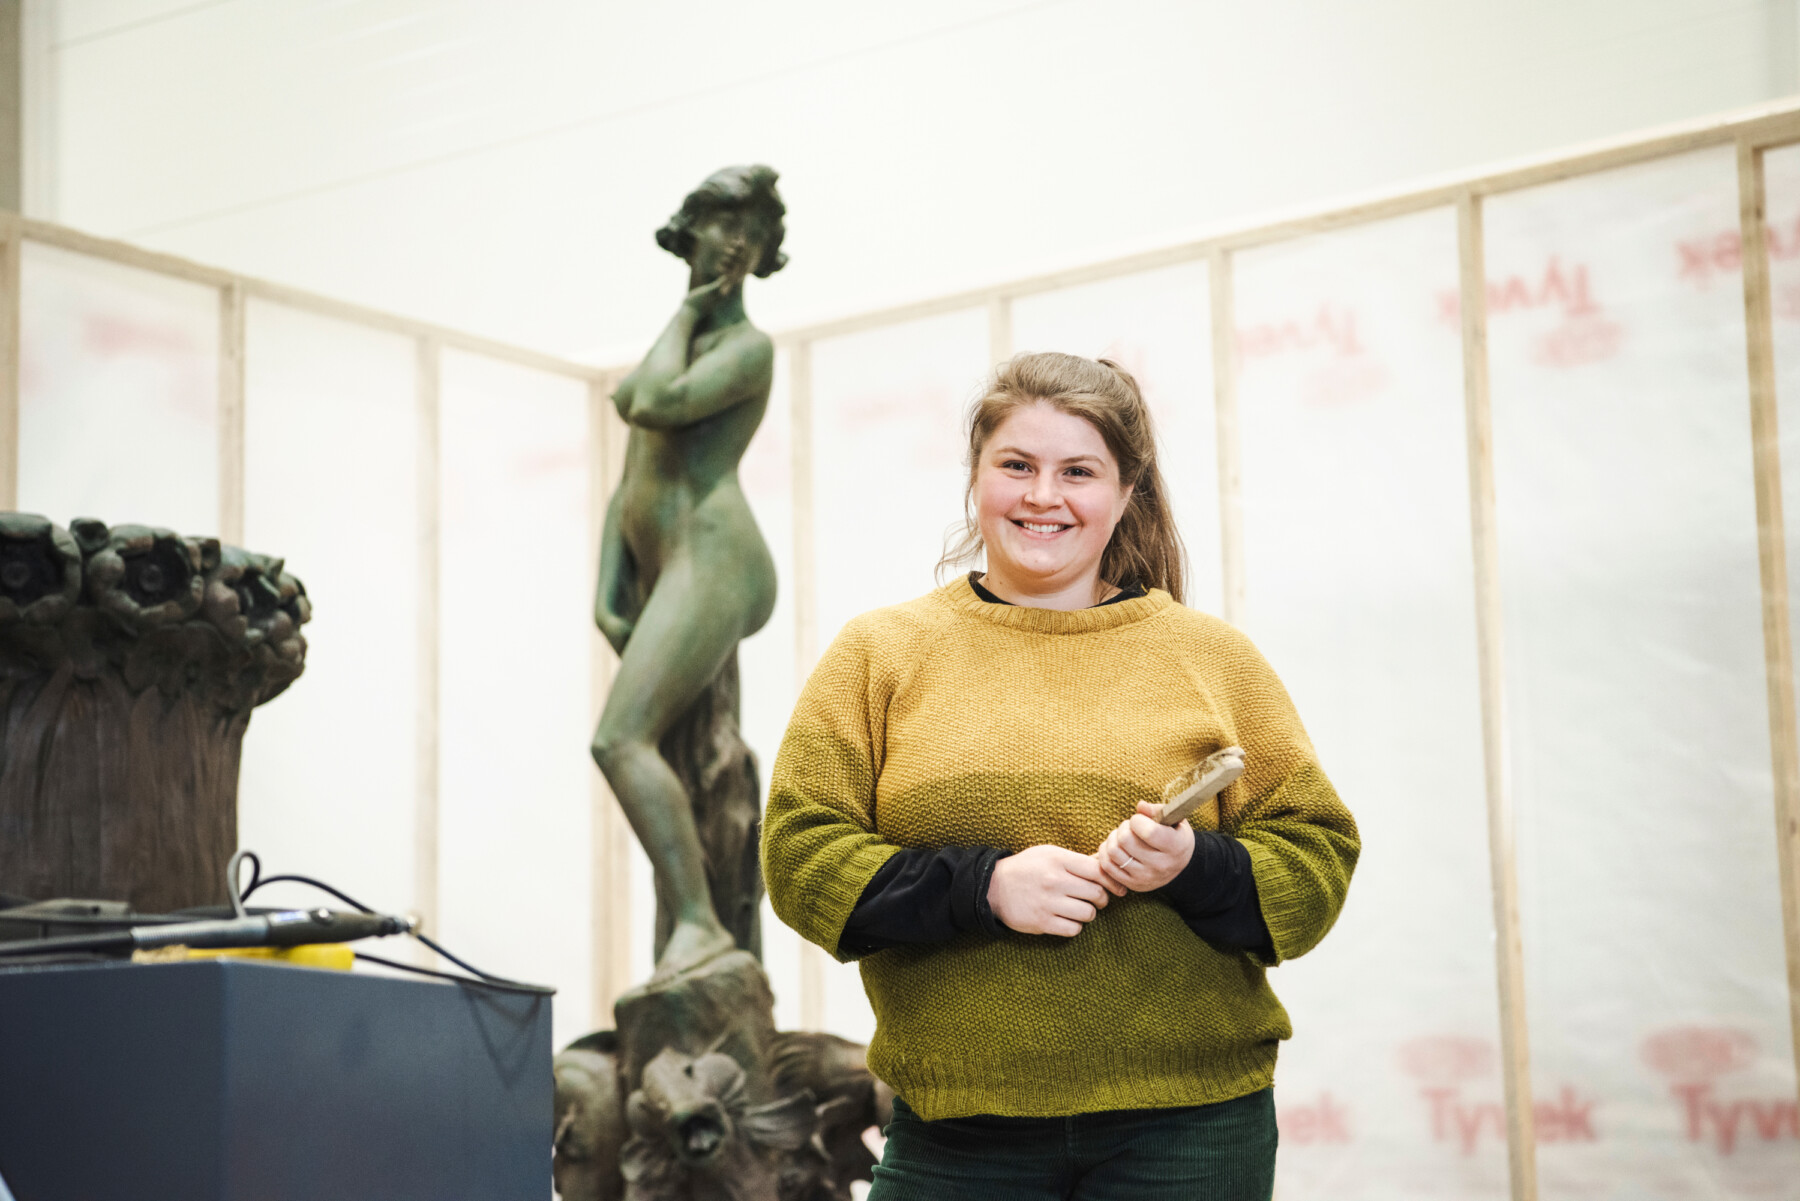 Женщина с кистью в руках стоит в мастерской перед металлической статуей, изображающей женскую фигуру.